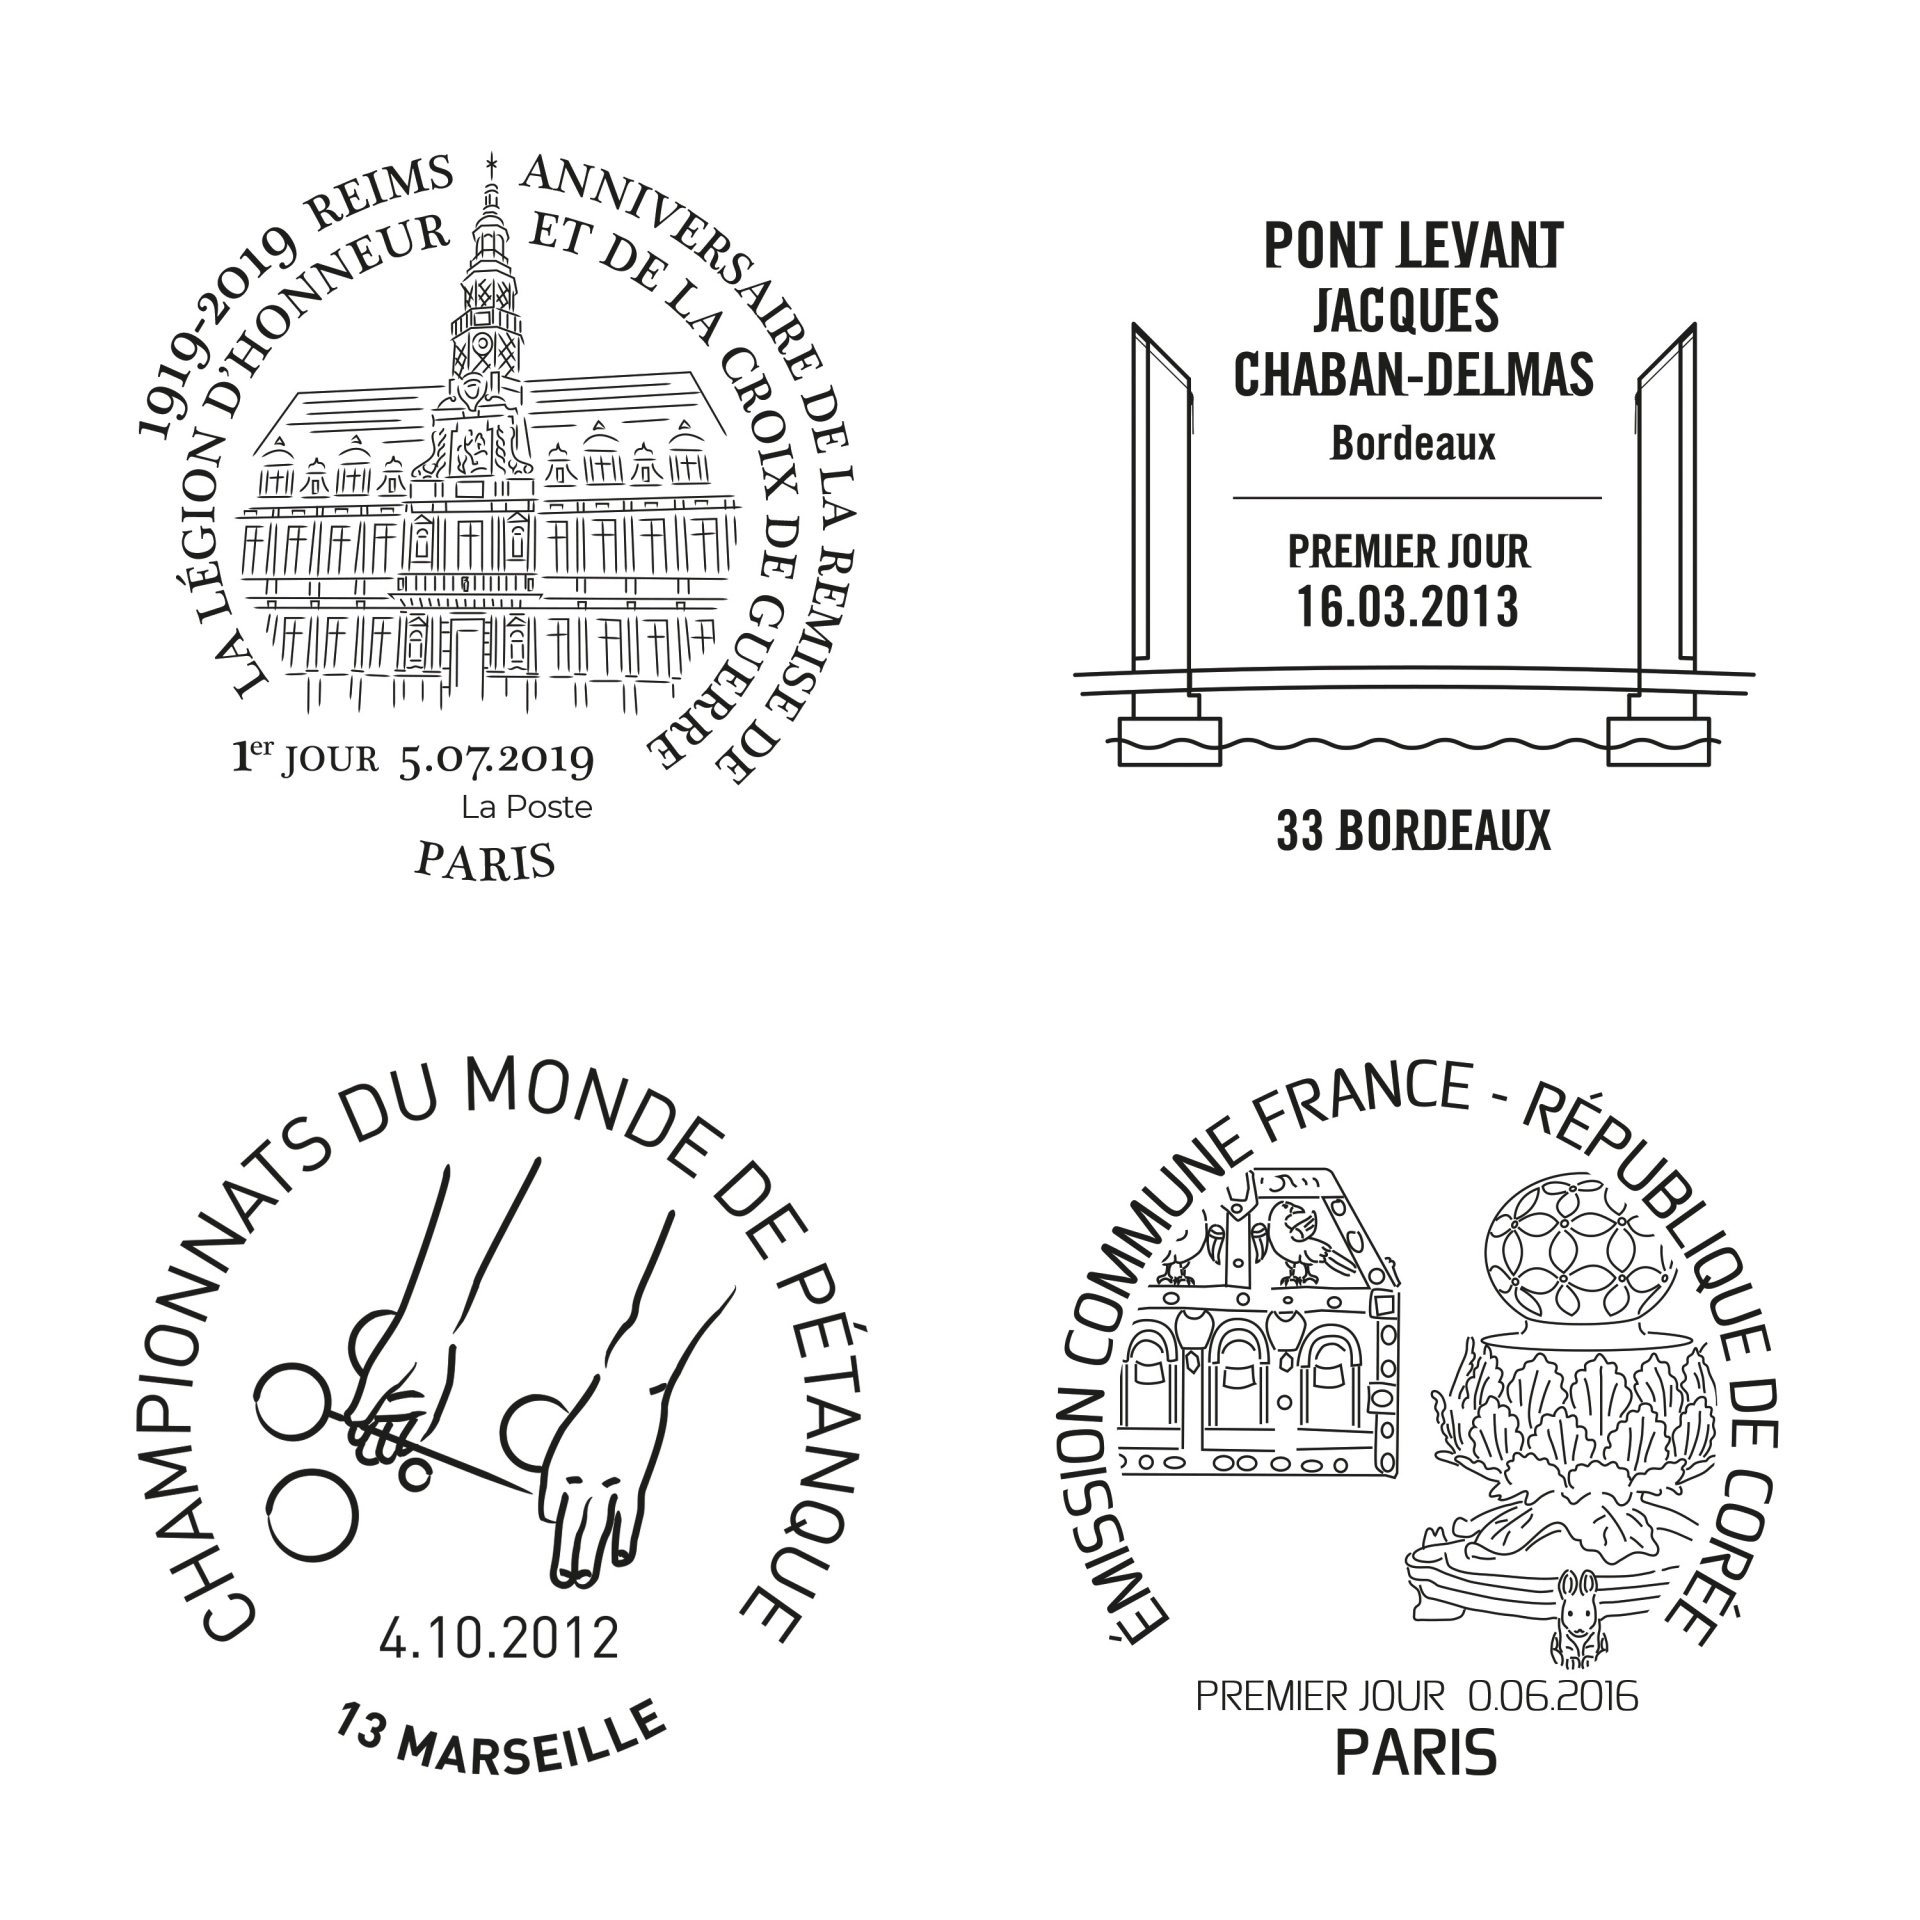 des illustrations très stylisées pour les cachets postaux qui accompagnent les timbres pour LA POSTE